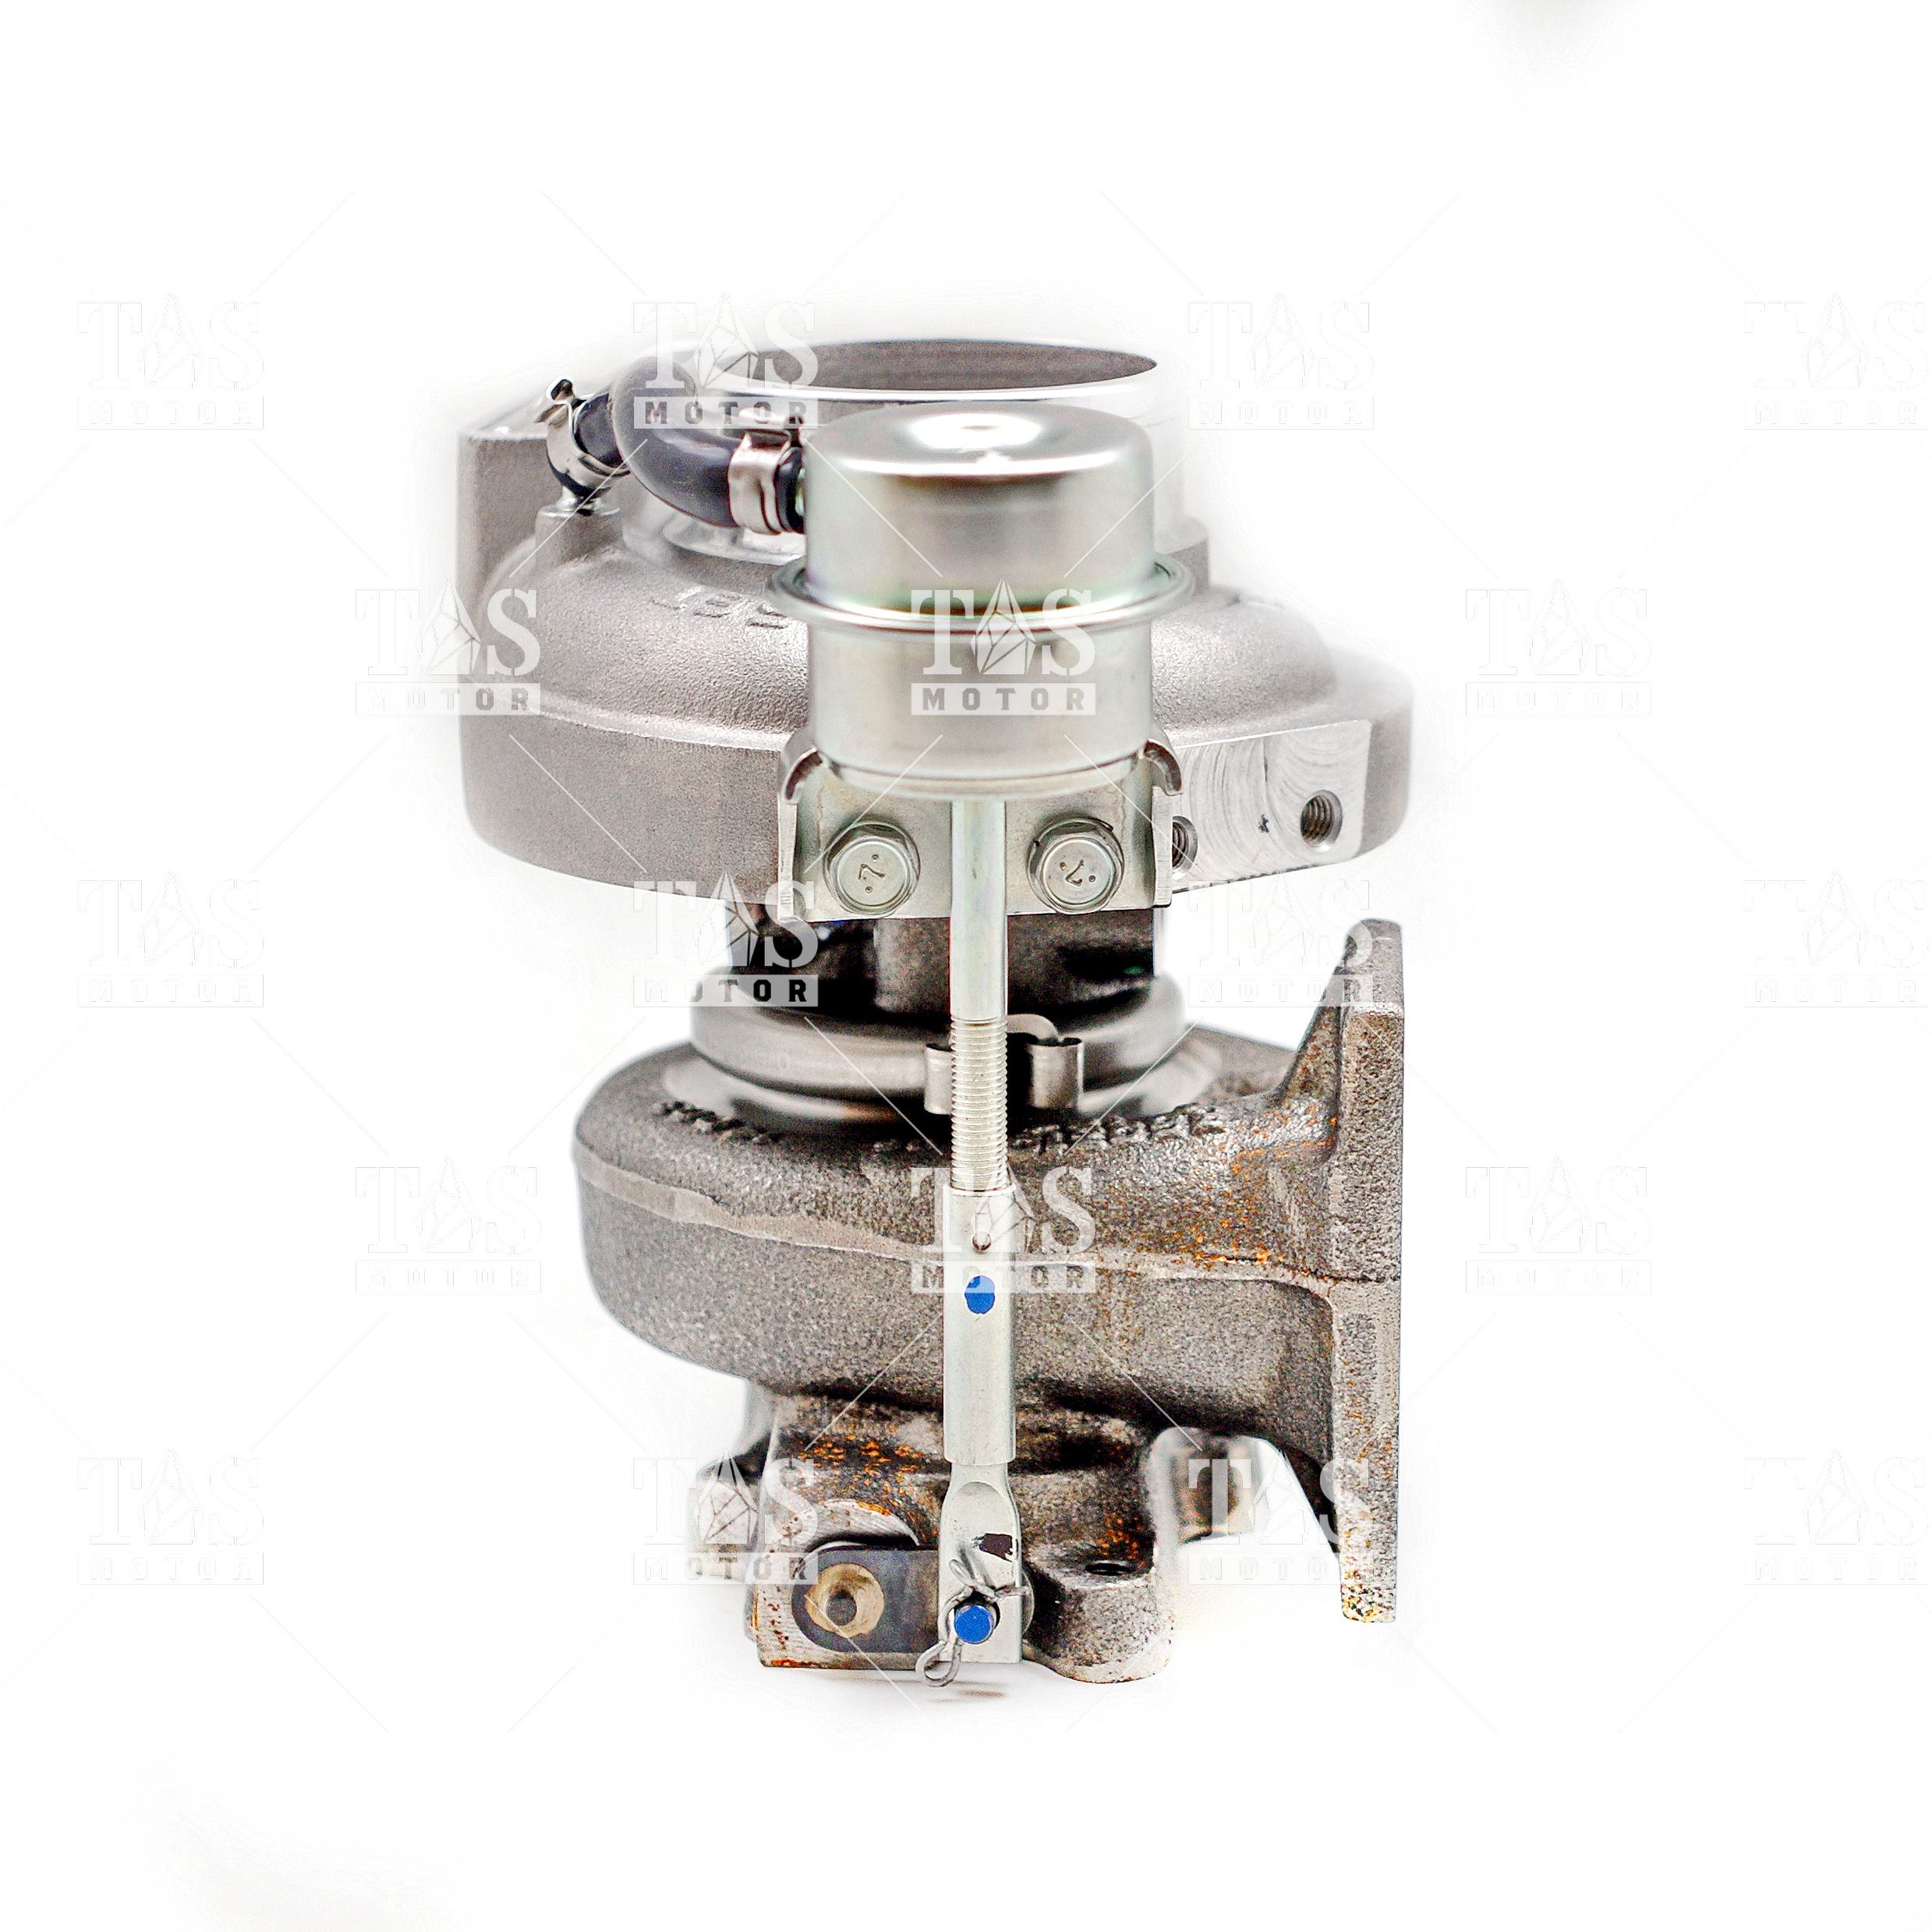 Турбокомпрессор HE221W, производитель Holset, для двигателя Cummins QSB4.5, B Series 4040552 Дополнительные артикулы 4040553, 4955272